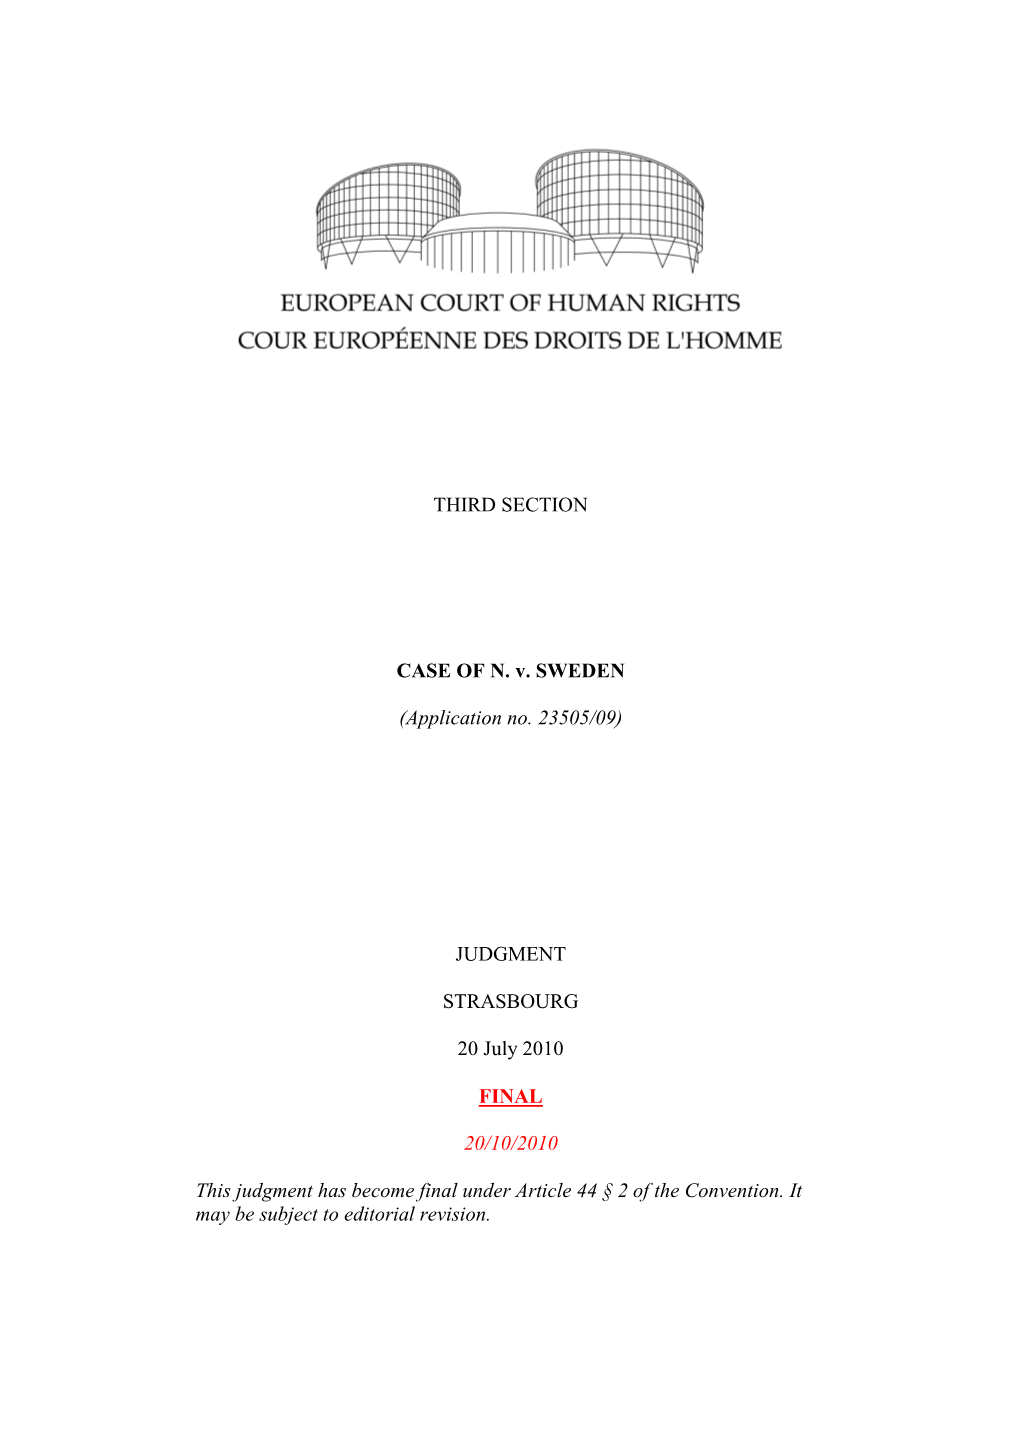 THIRD SECTION CASE of N. V. SWEDEN (Application No. 23505/09)